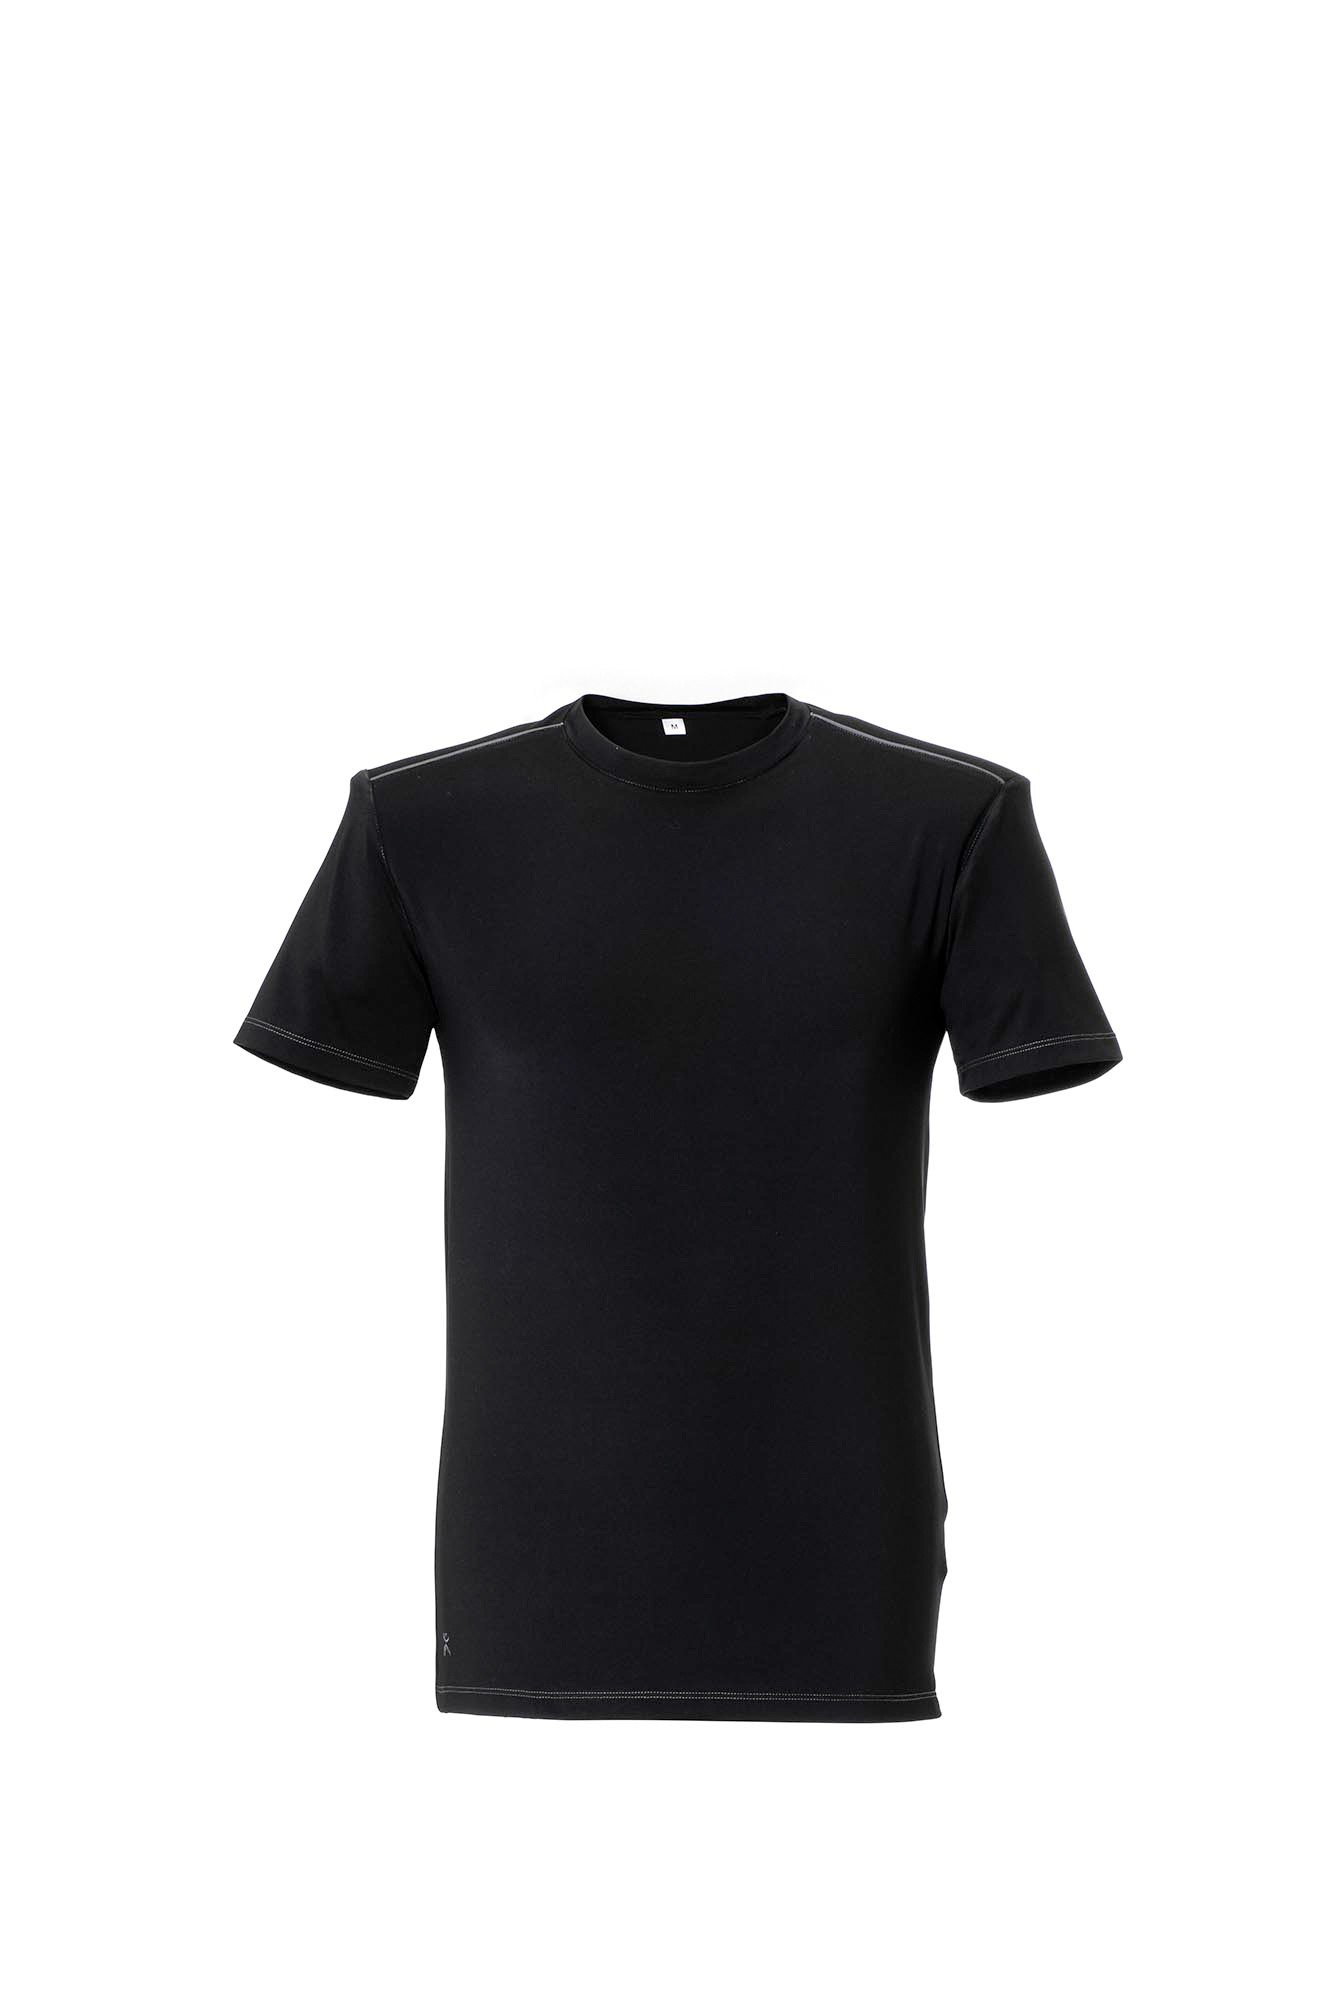 Planam Durawork T-Shirt atmungsaktives Arbeitsshirt Größe XS - 3XL, in 3 Farben